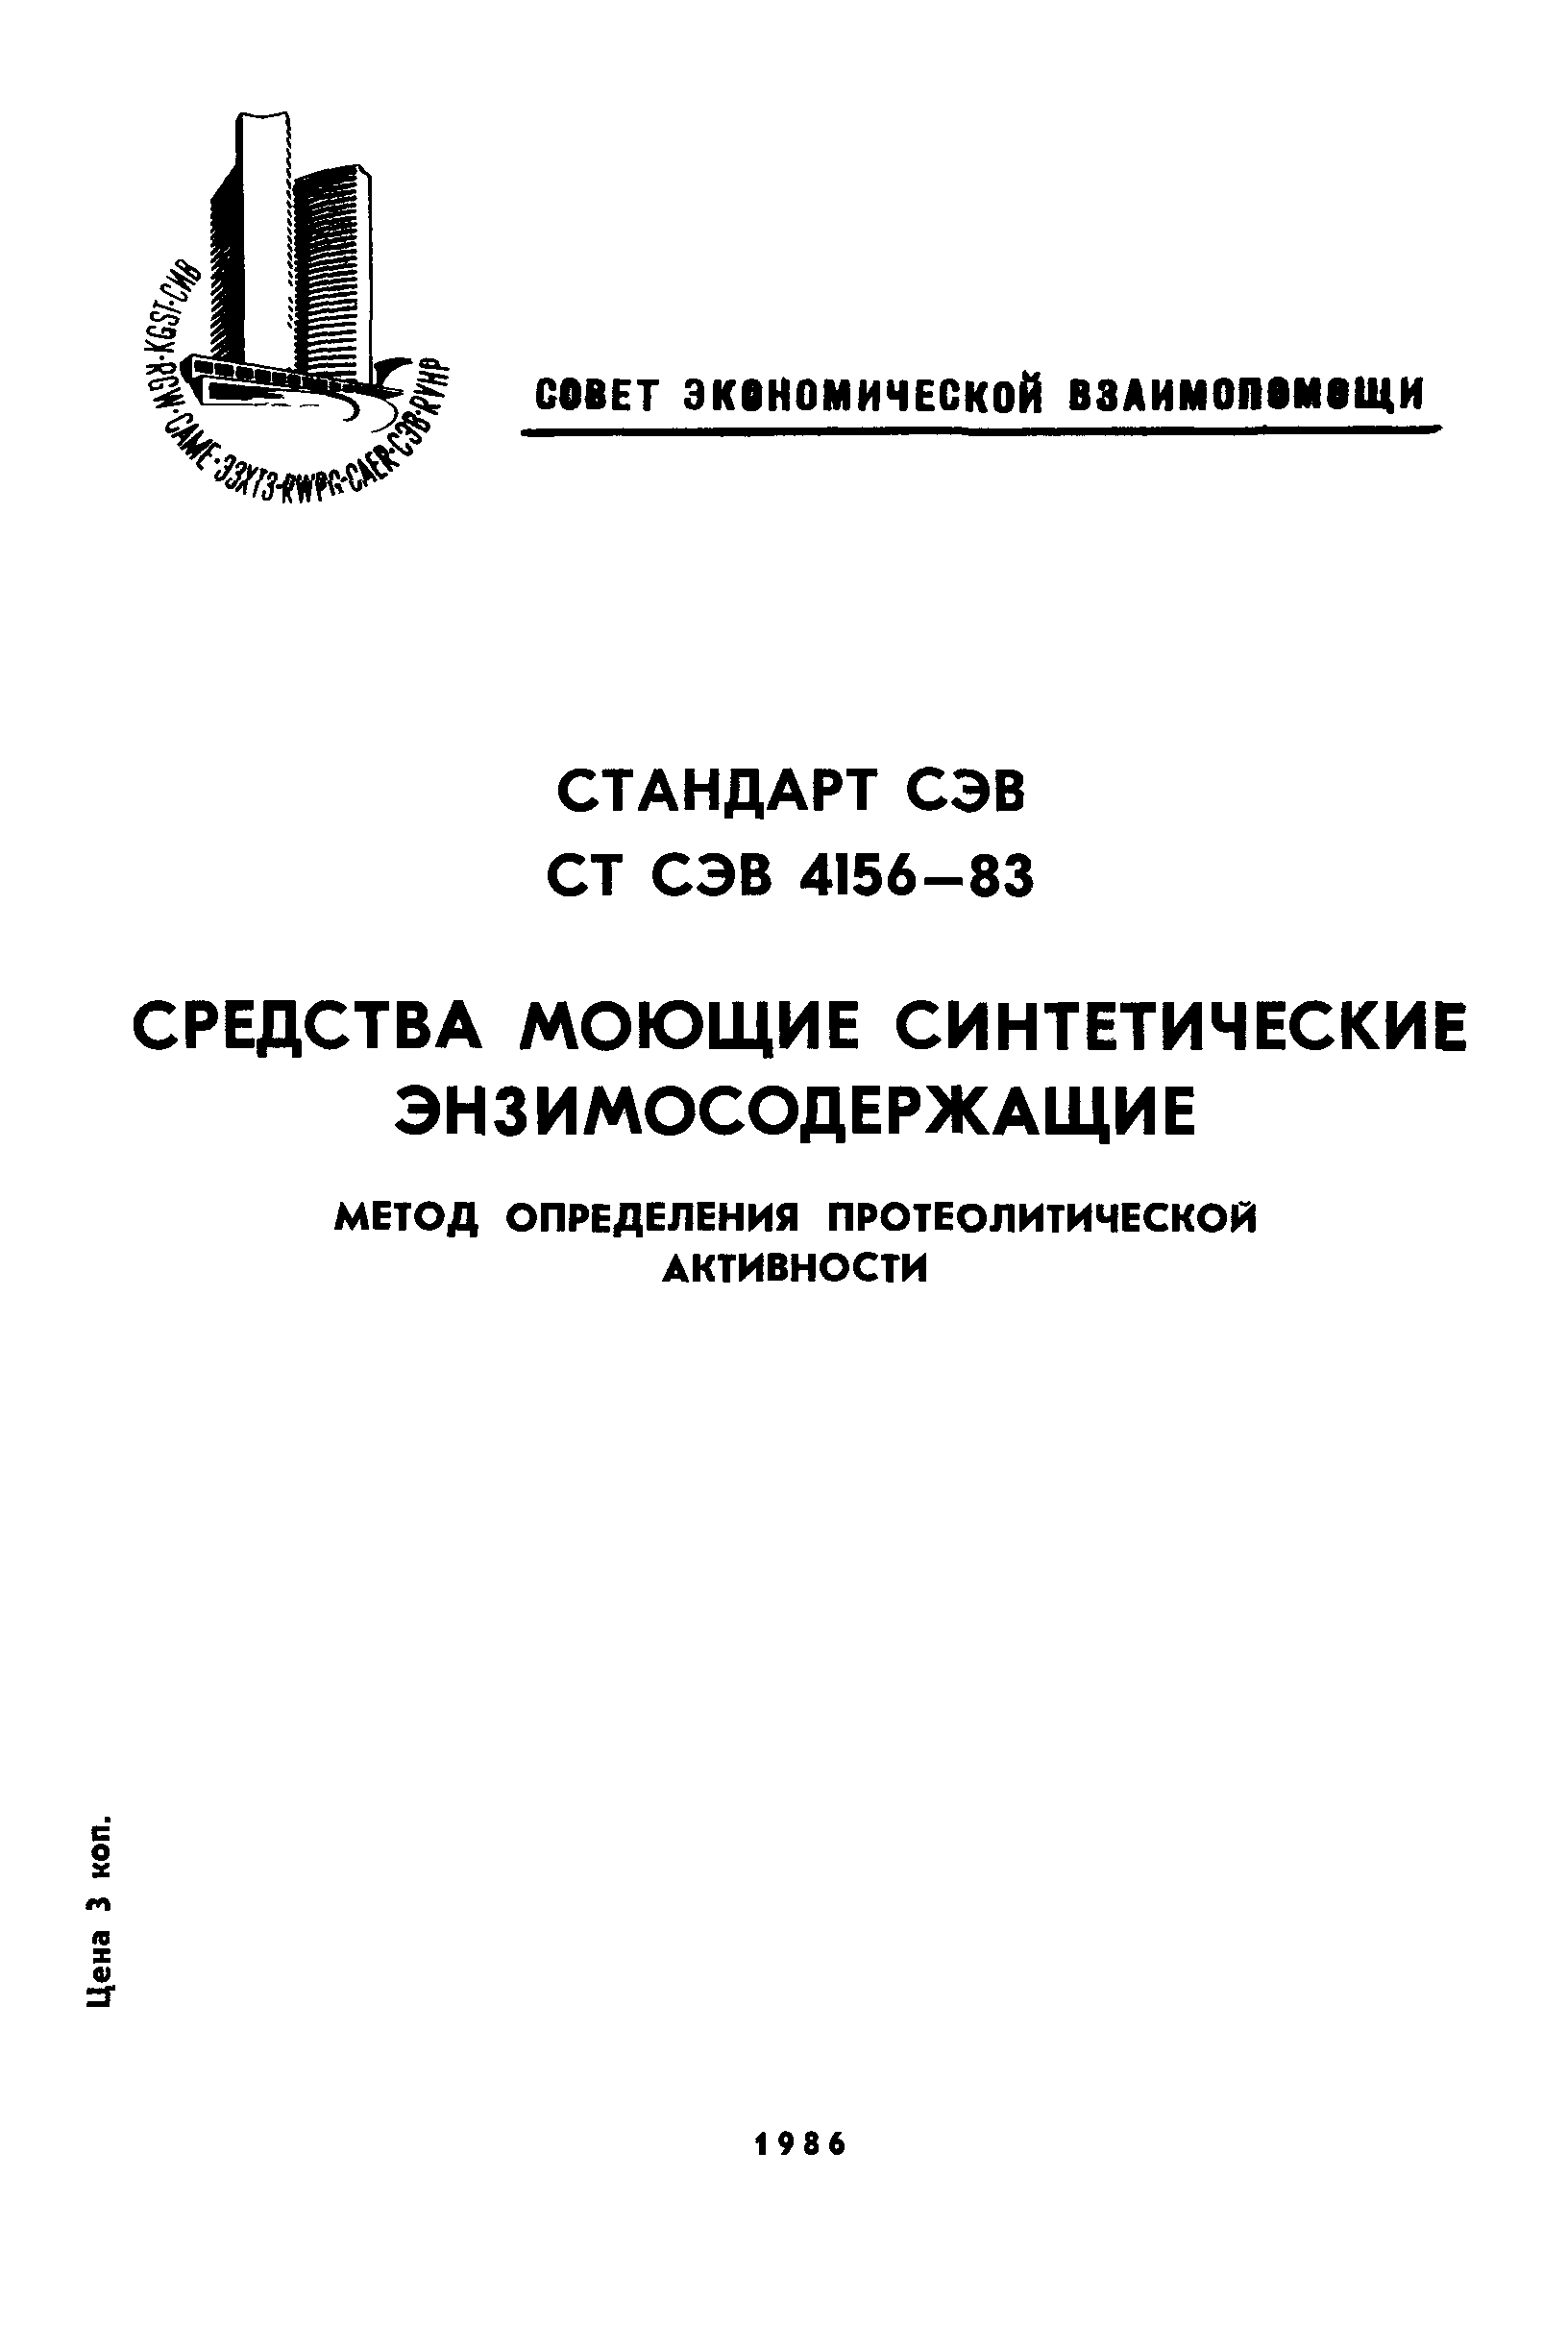 СТ СЭВ 4156-83